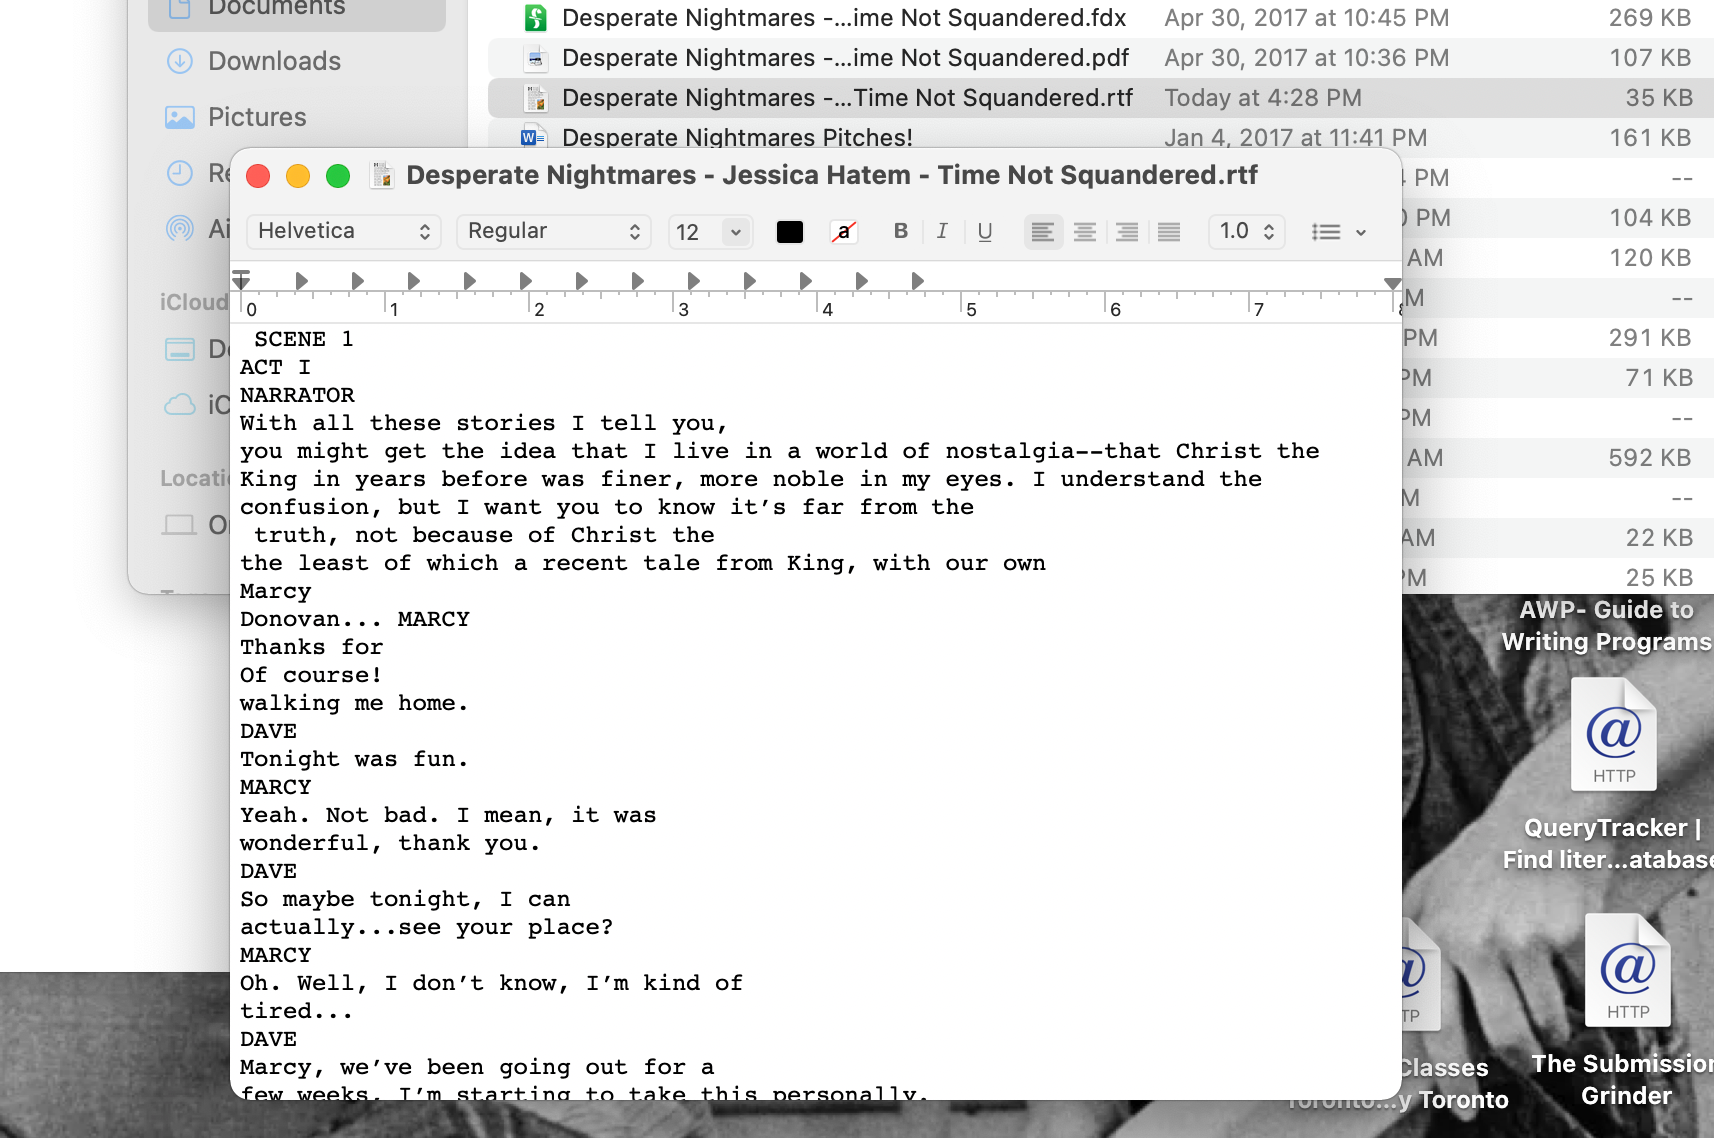 So konvertieren Sie ein PDF in Word auf einem Mac - PDF made into RTF doc